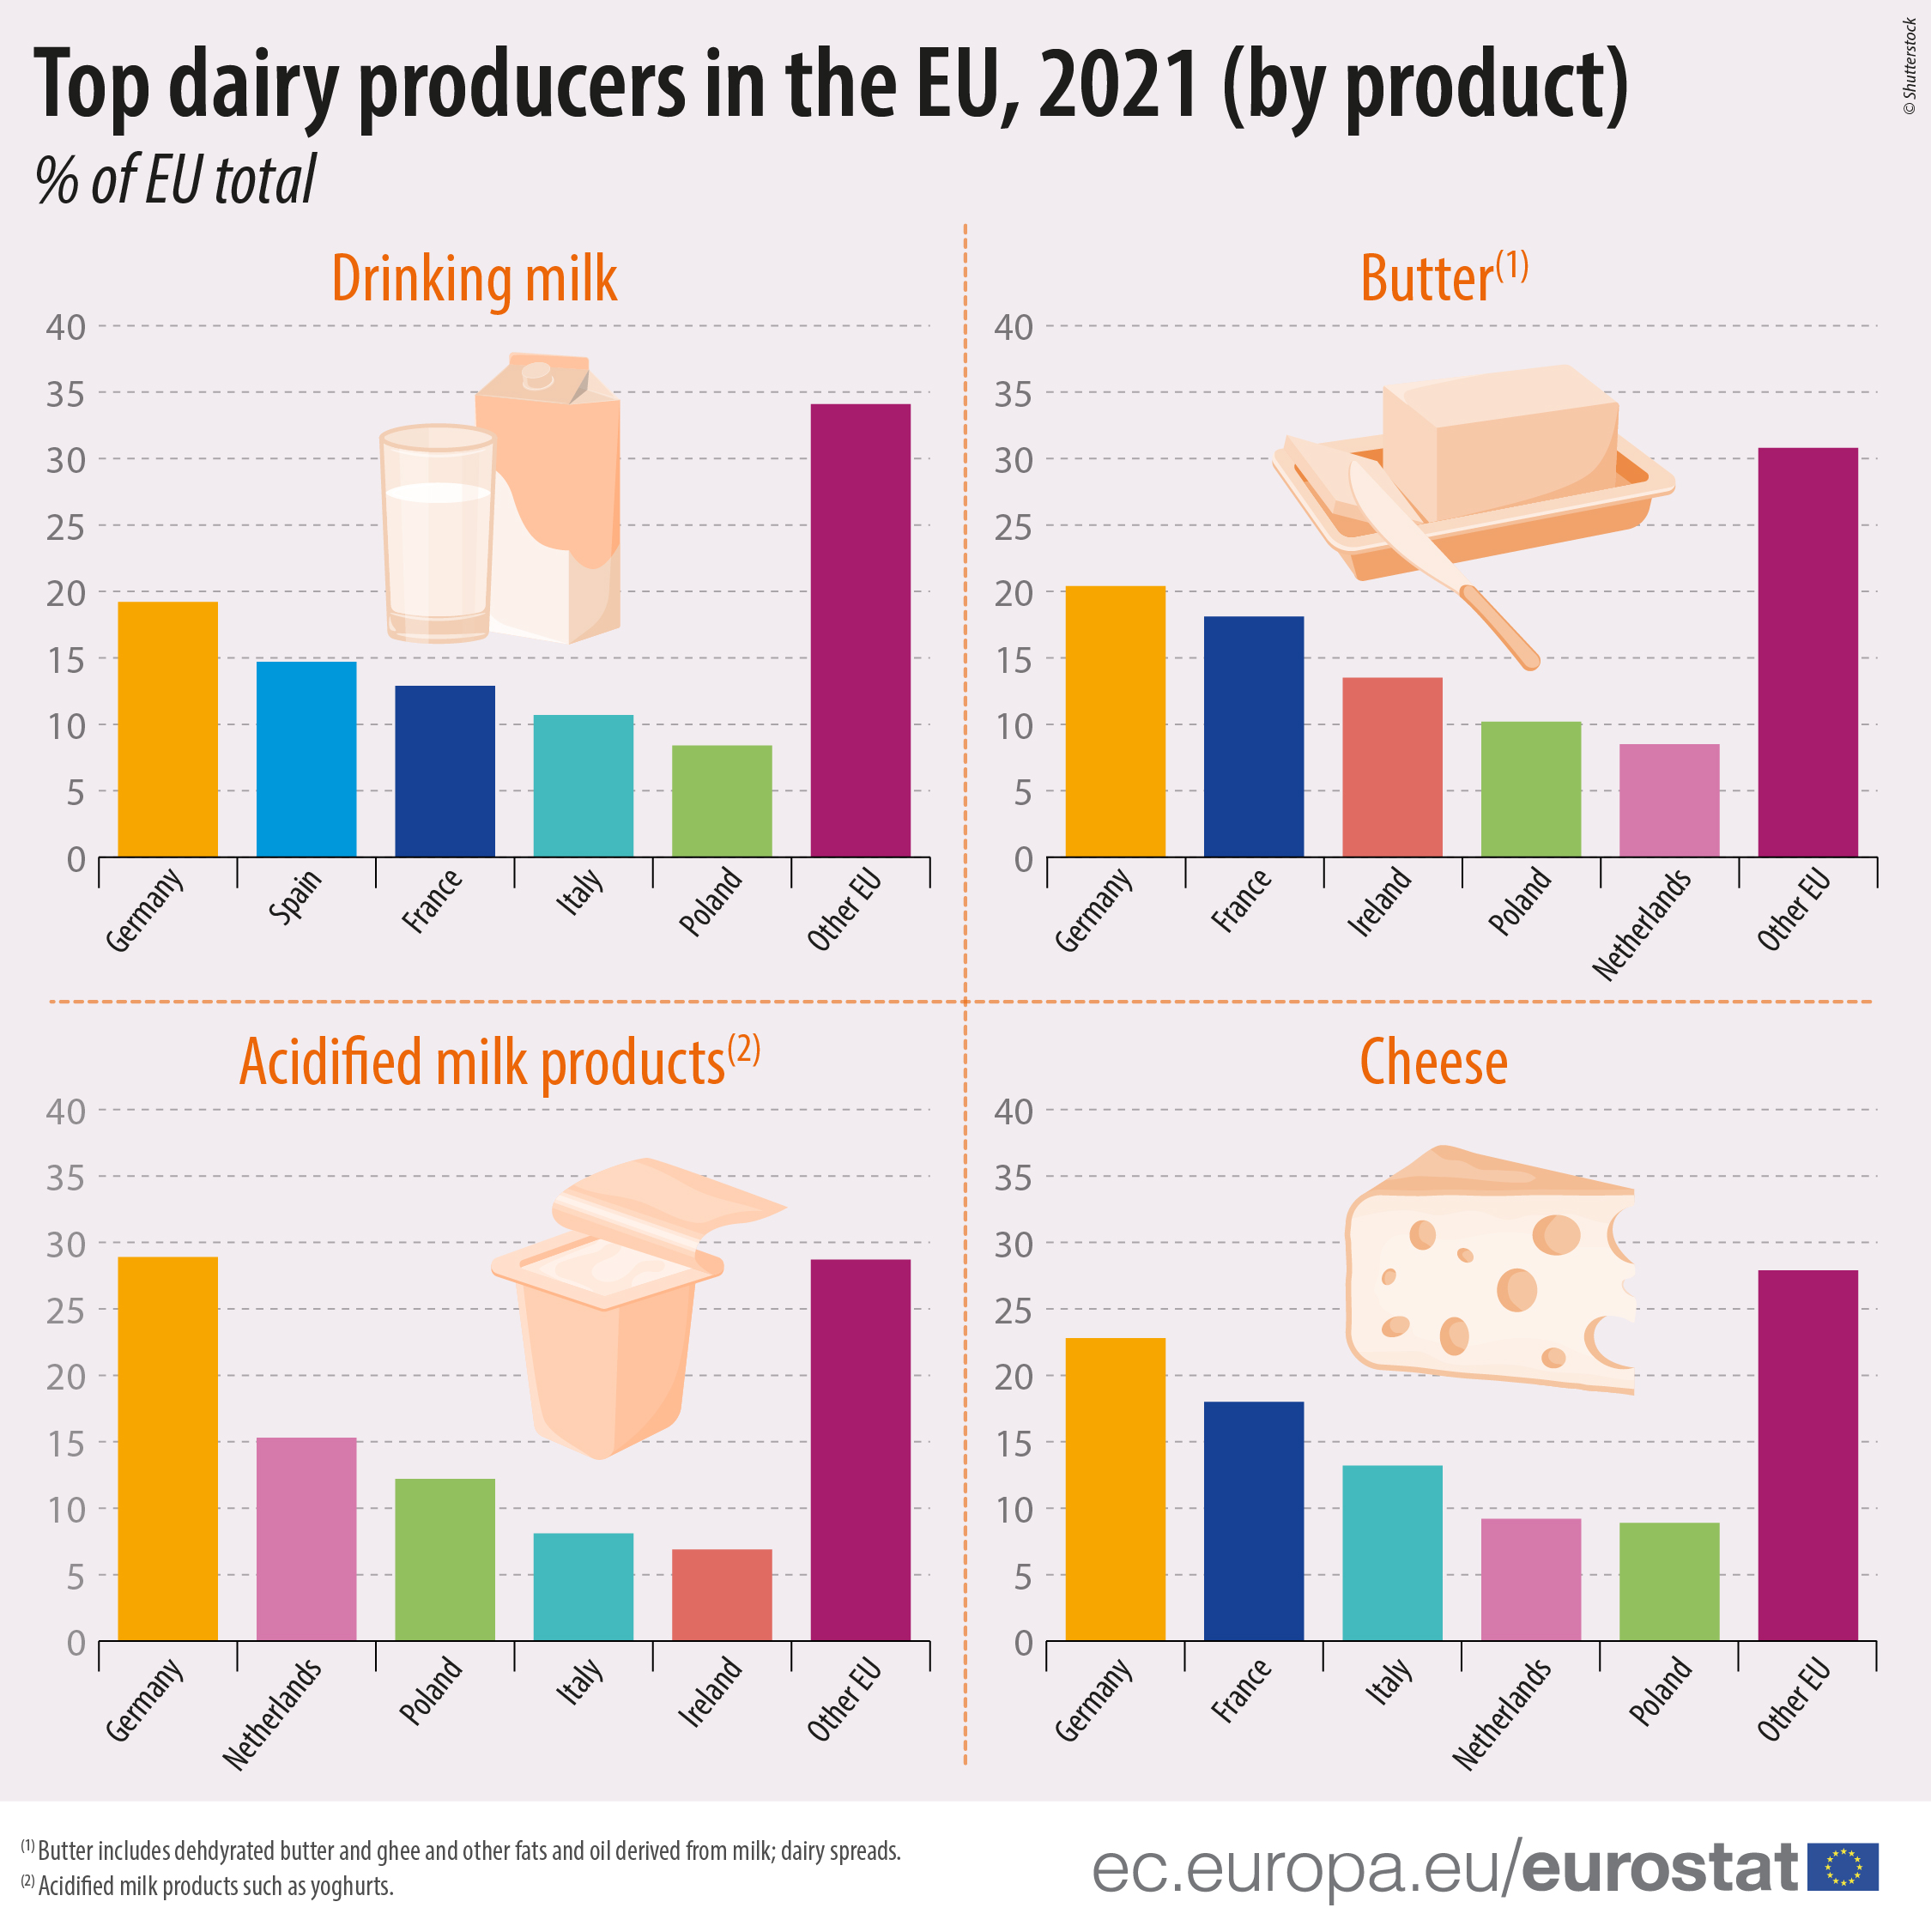 Gráficos de barras: Principales productores lácteos de la UE en 2021, por producto, en % del total de la UE